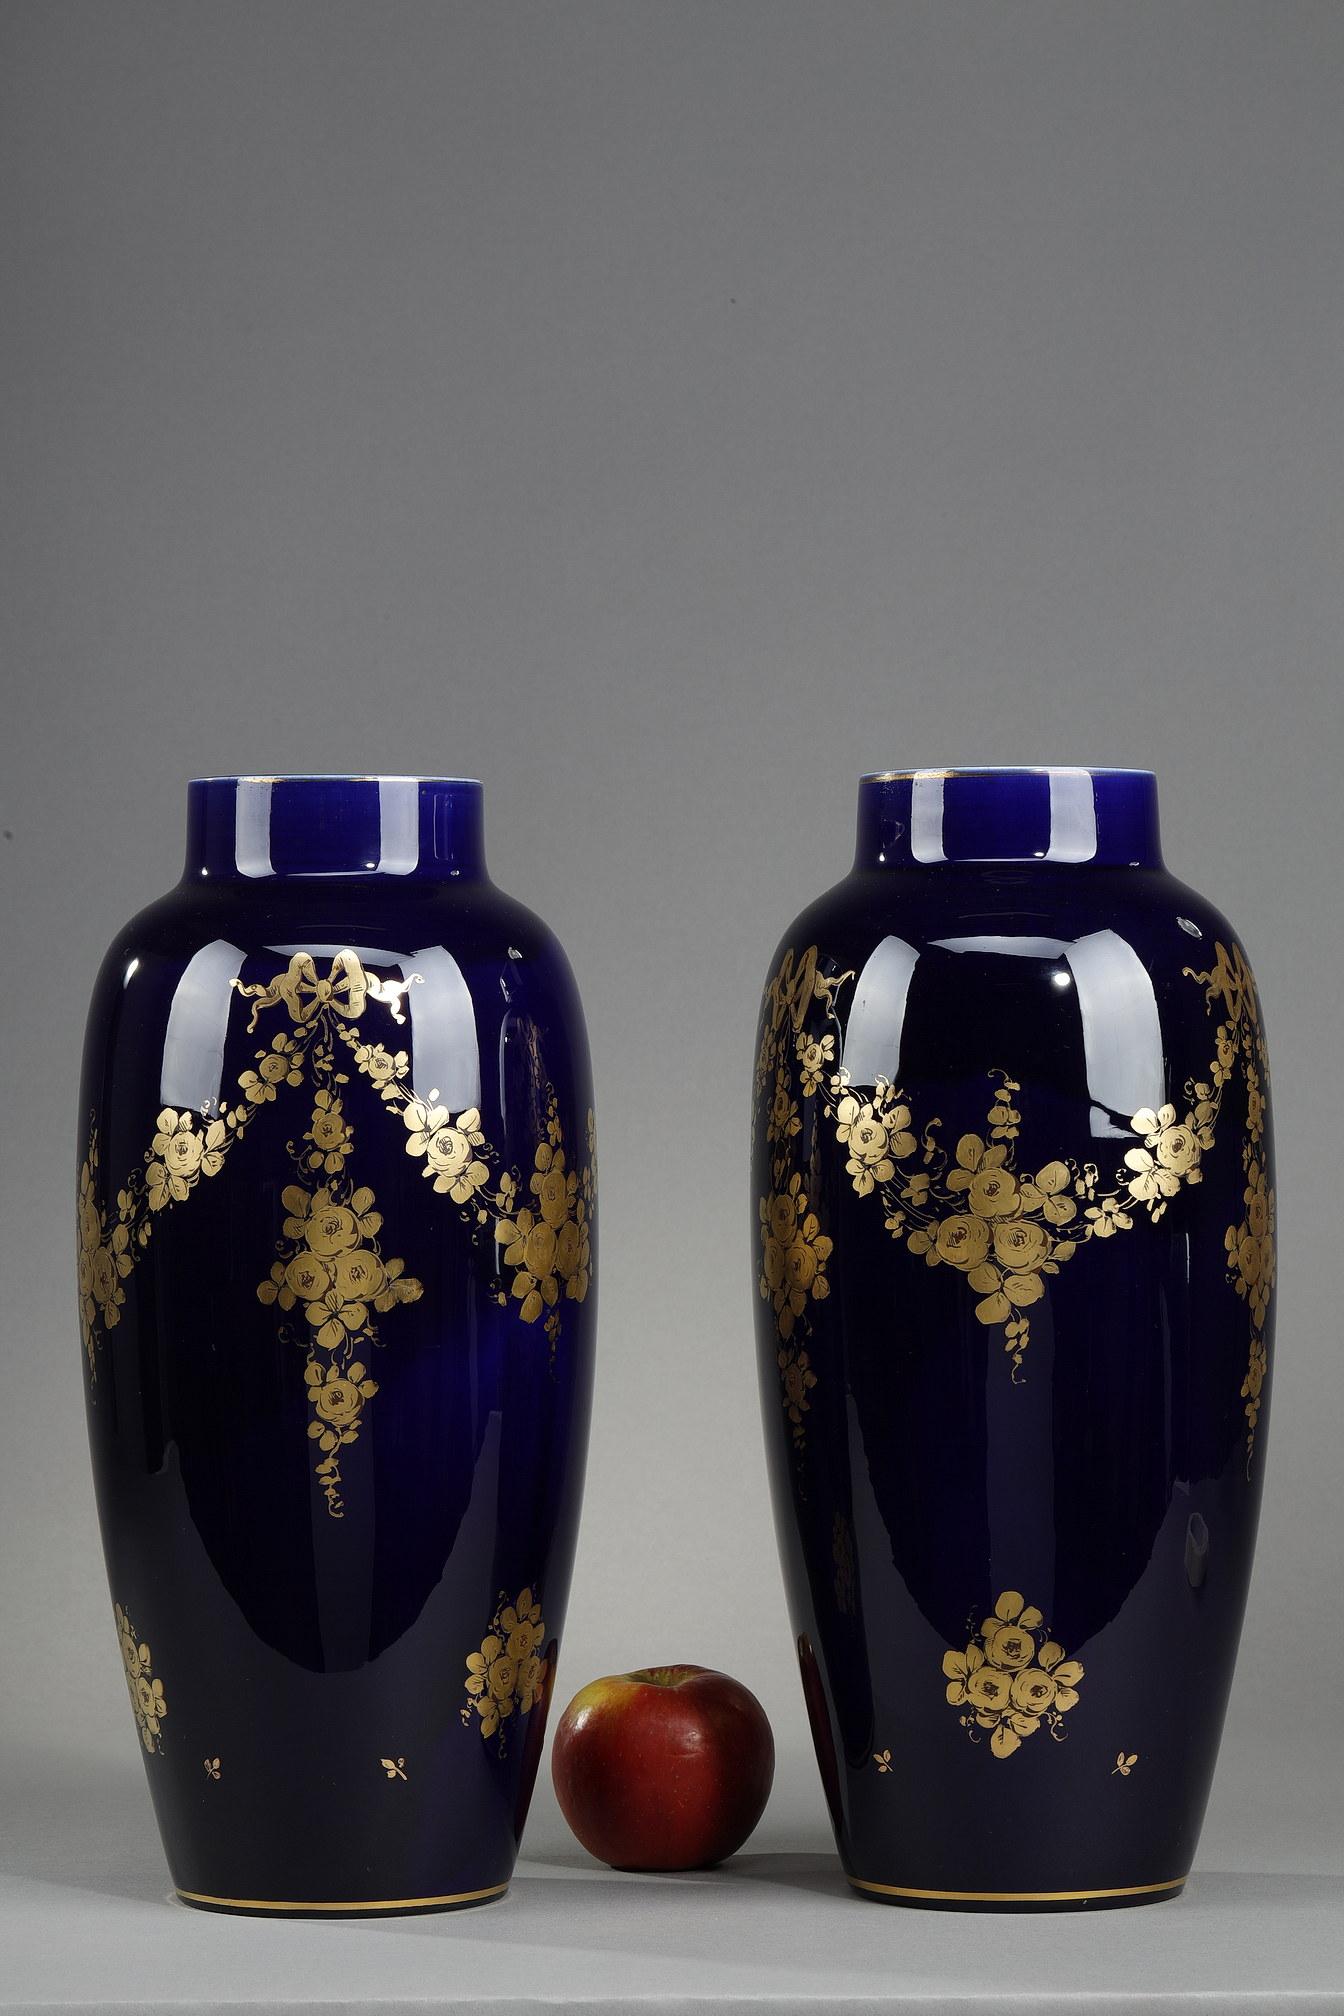 Paar Vasen aus blauem Porzellan von Tours aus dem Jahr 1900 mit vergoldetem Rosendekor und Bändern. Diese goldfarbenen Motive sind typisch für die Jugendstildekore des Keramikers Frederic Gustave Asch (1856-1911). Gegen Ende des 19. und zu Beginn